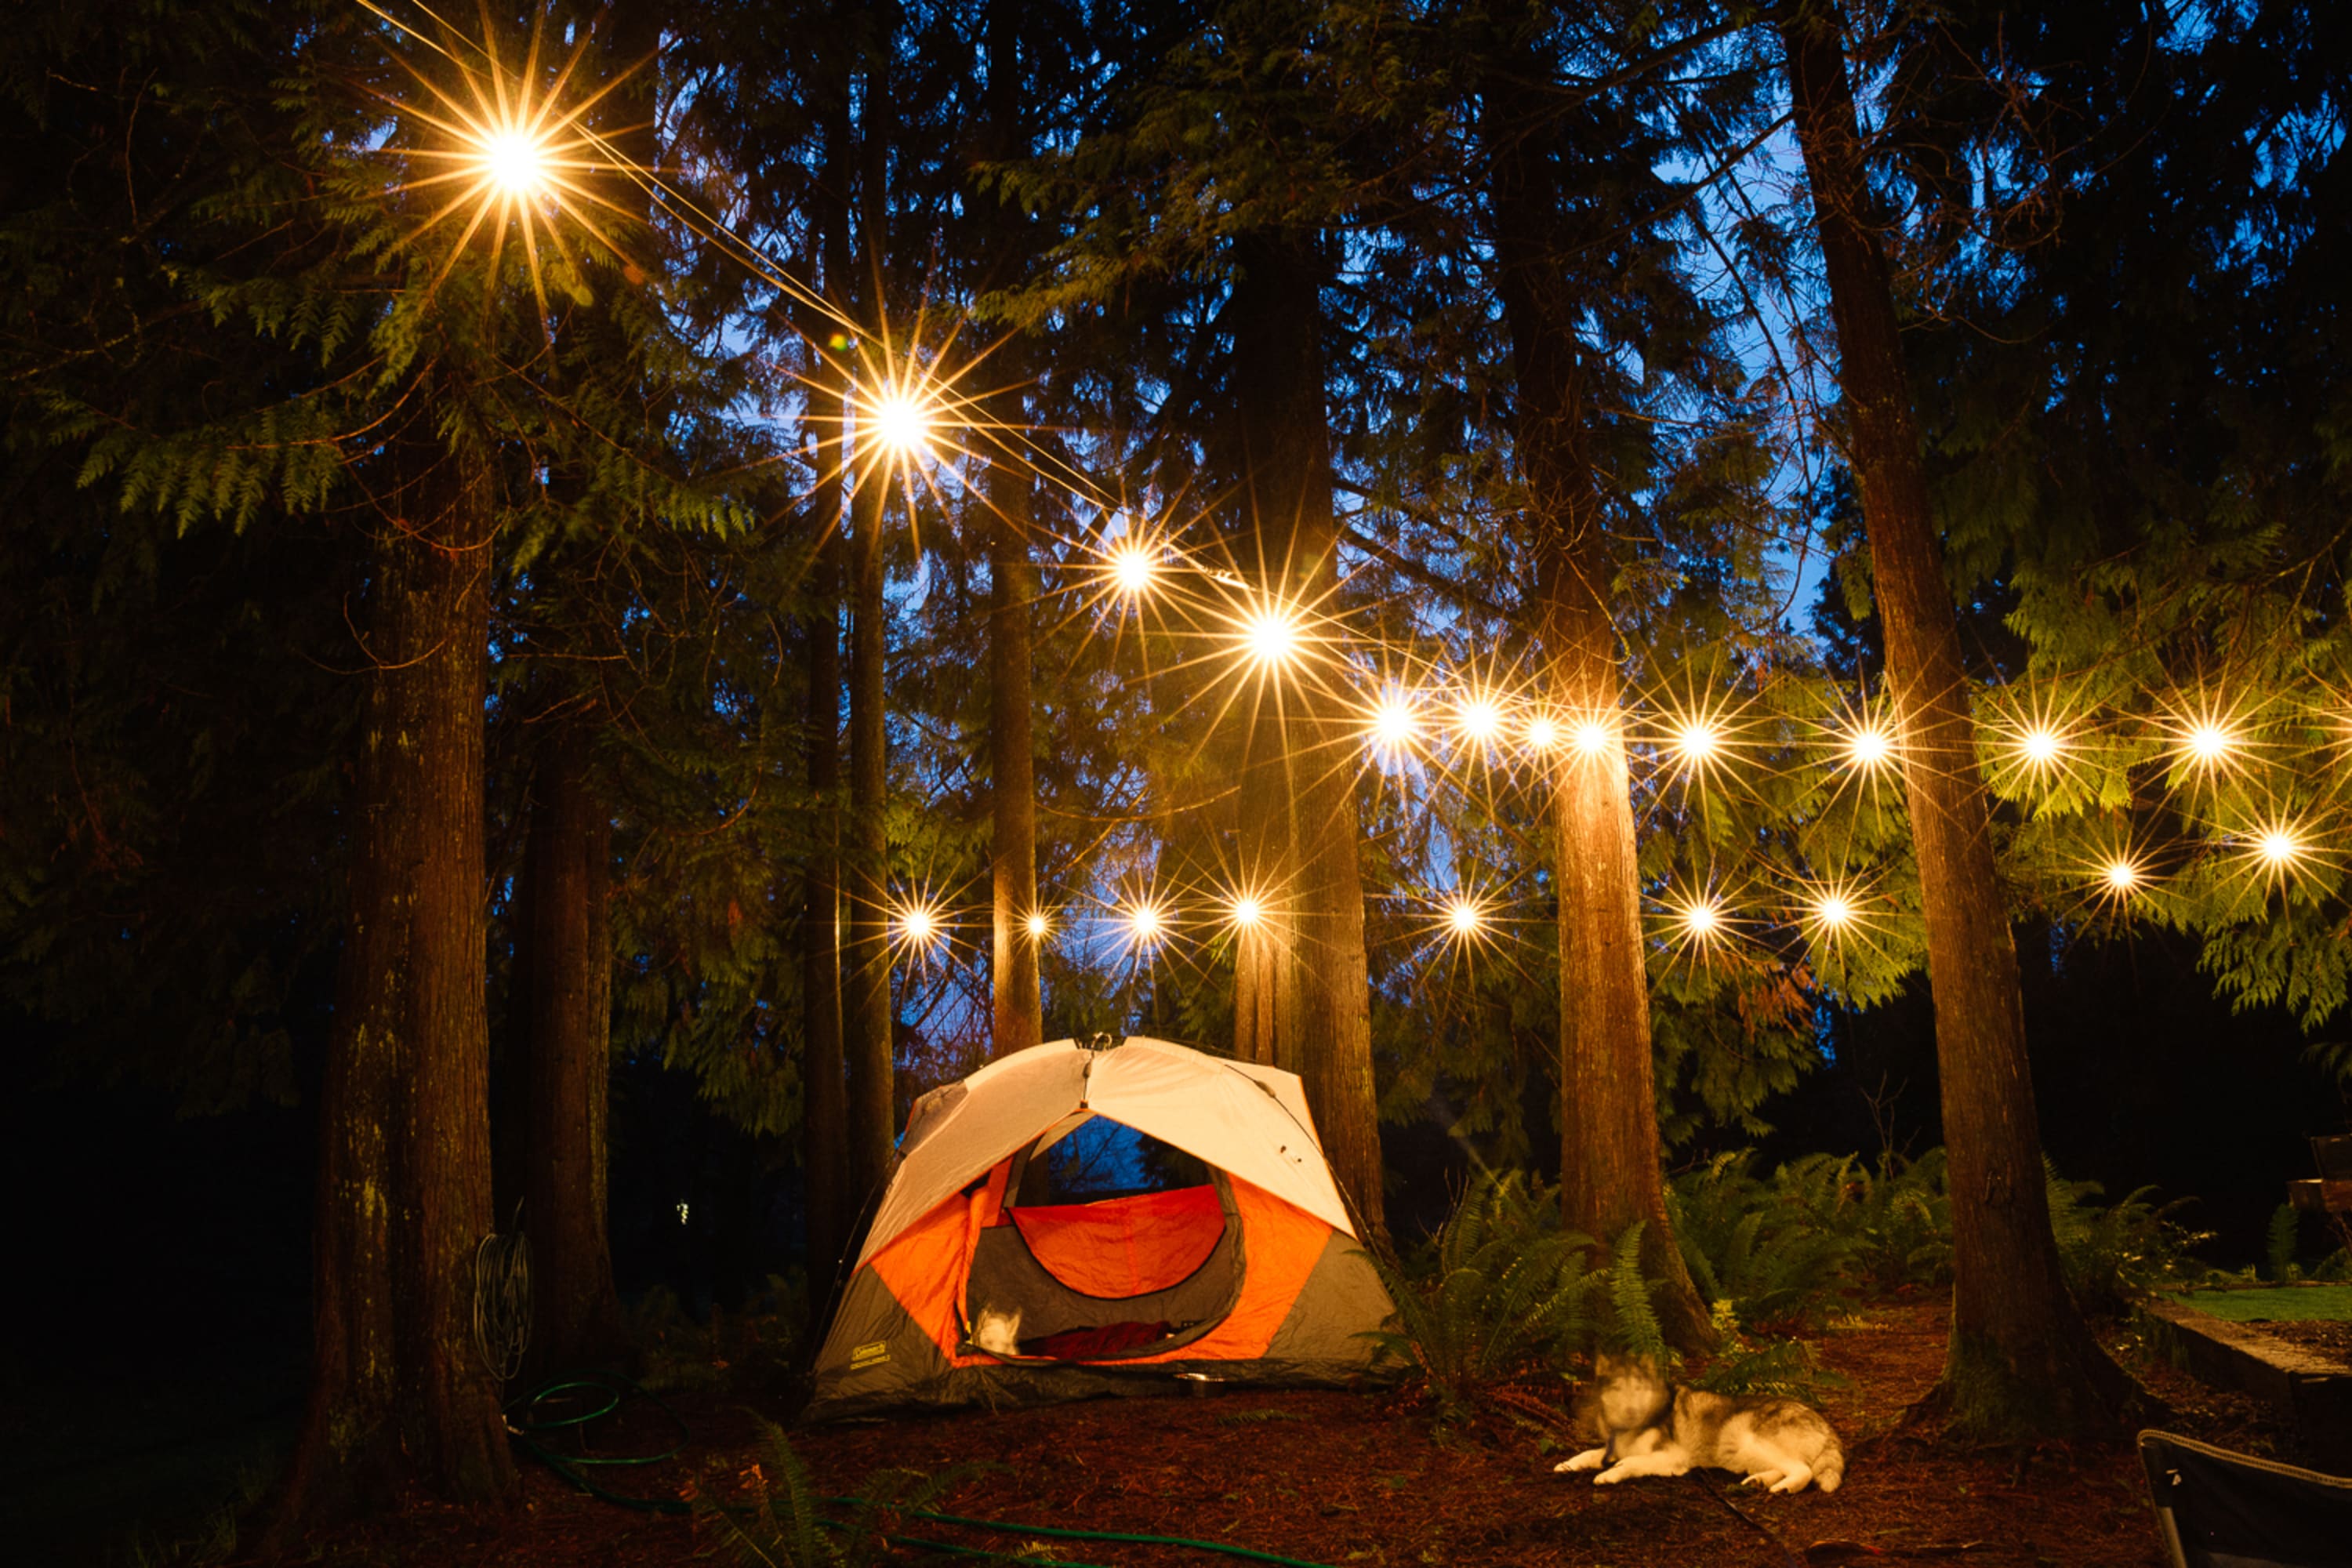 A camping scene